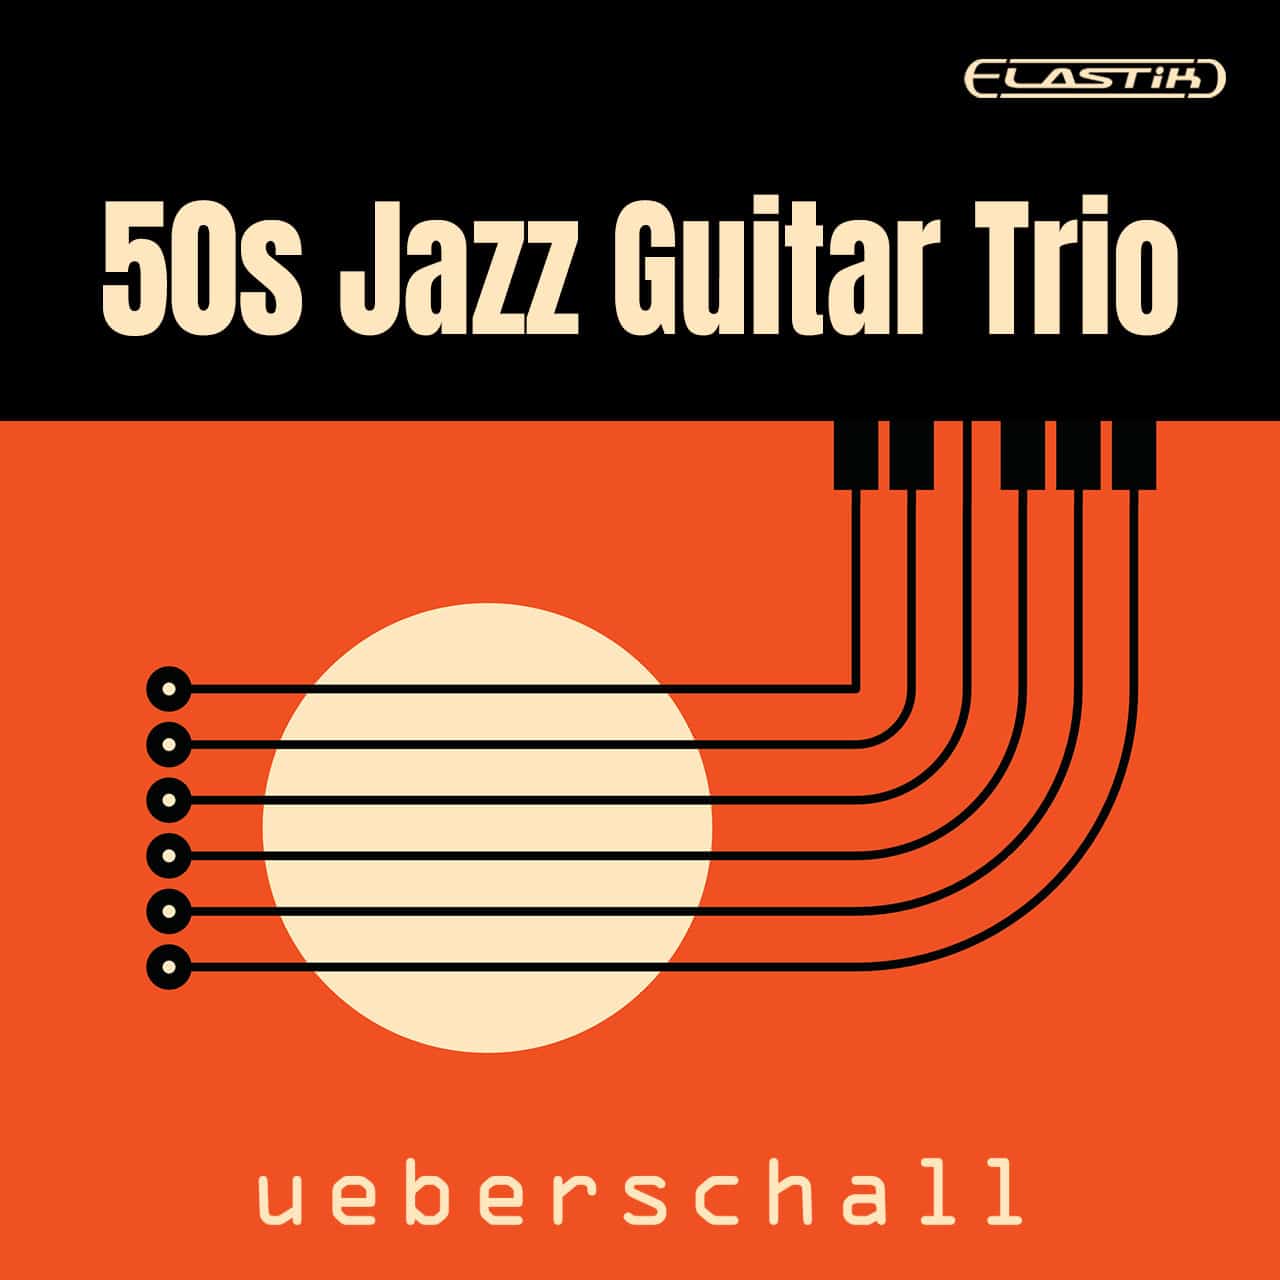 50s Jazz Guitar Trio Classic Sound – Warm & Smooth